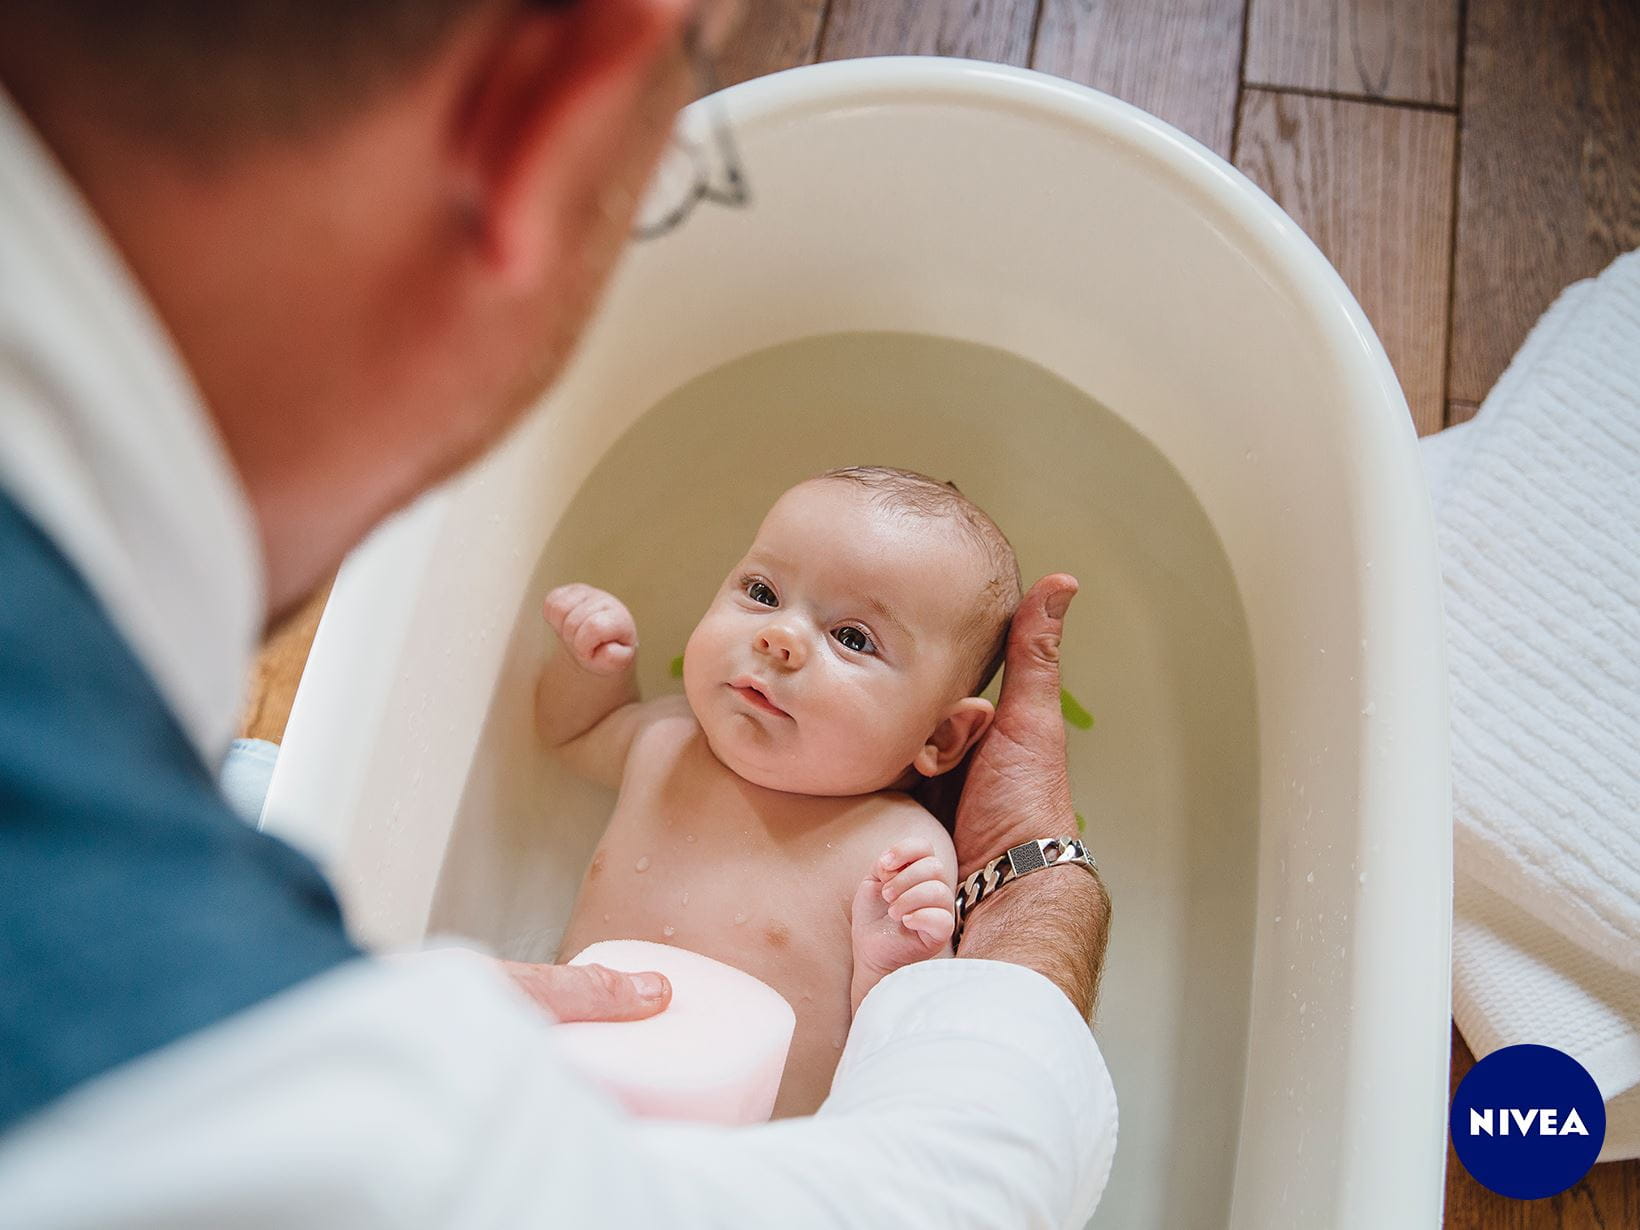 Ein Baby wird über eine Babybadewanne gehalten